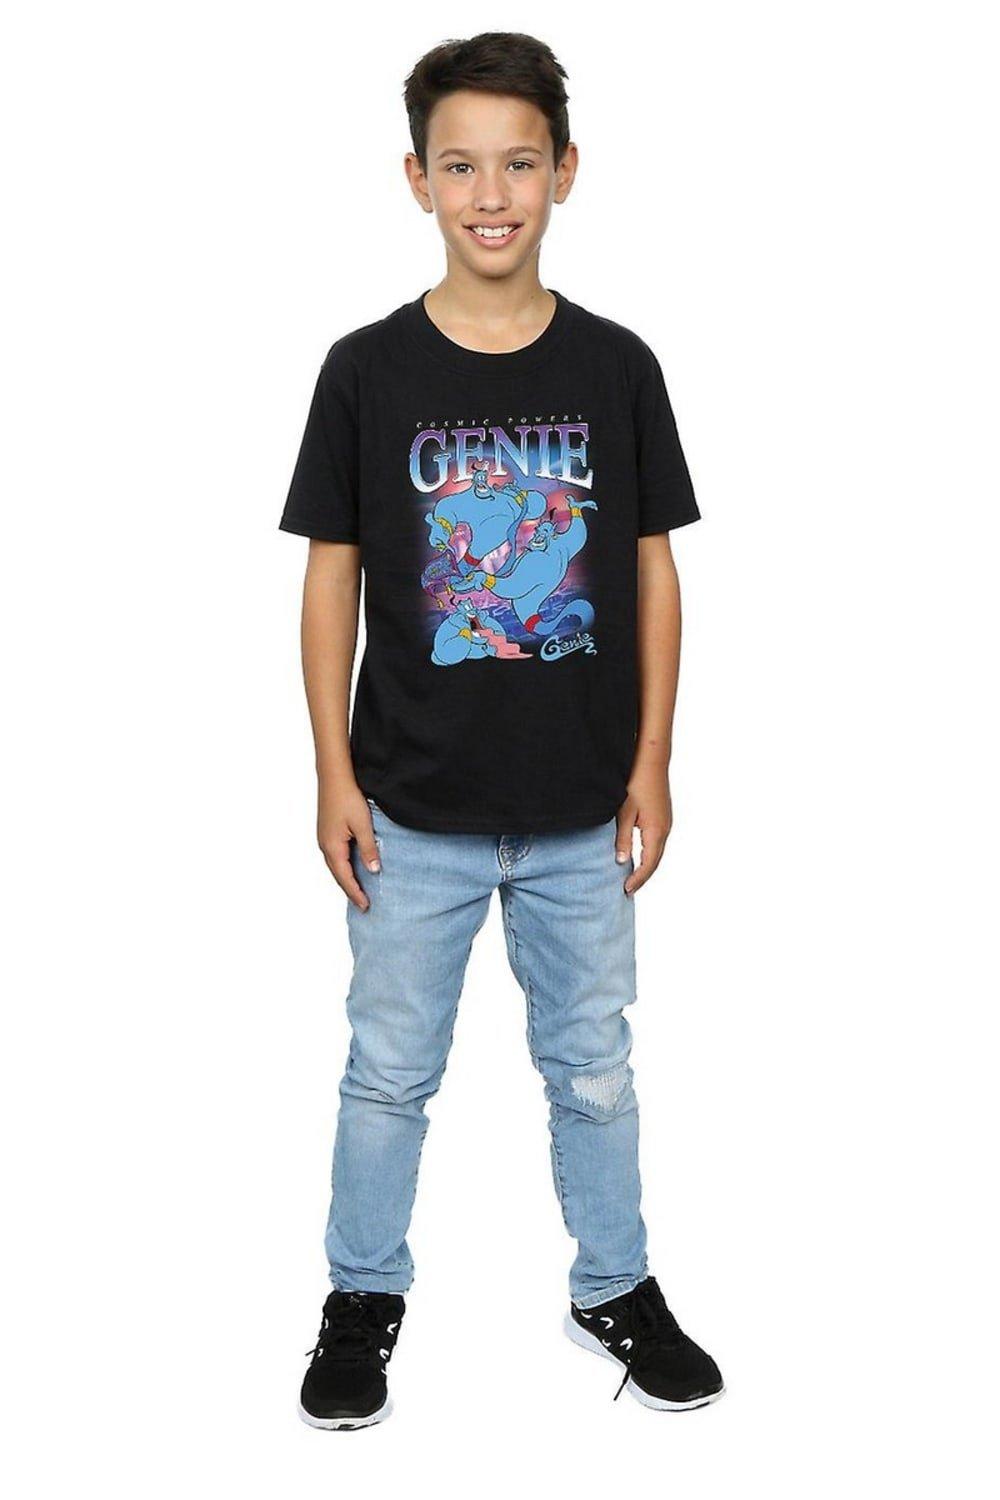 Genie Montage Cotton T-Shirt